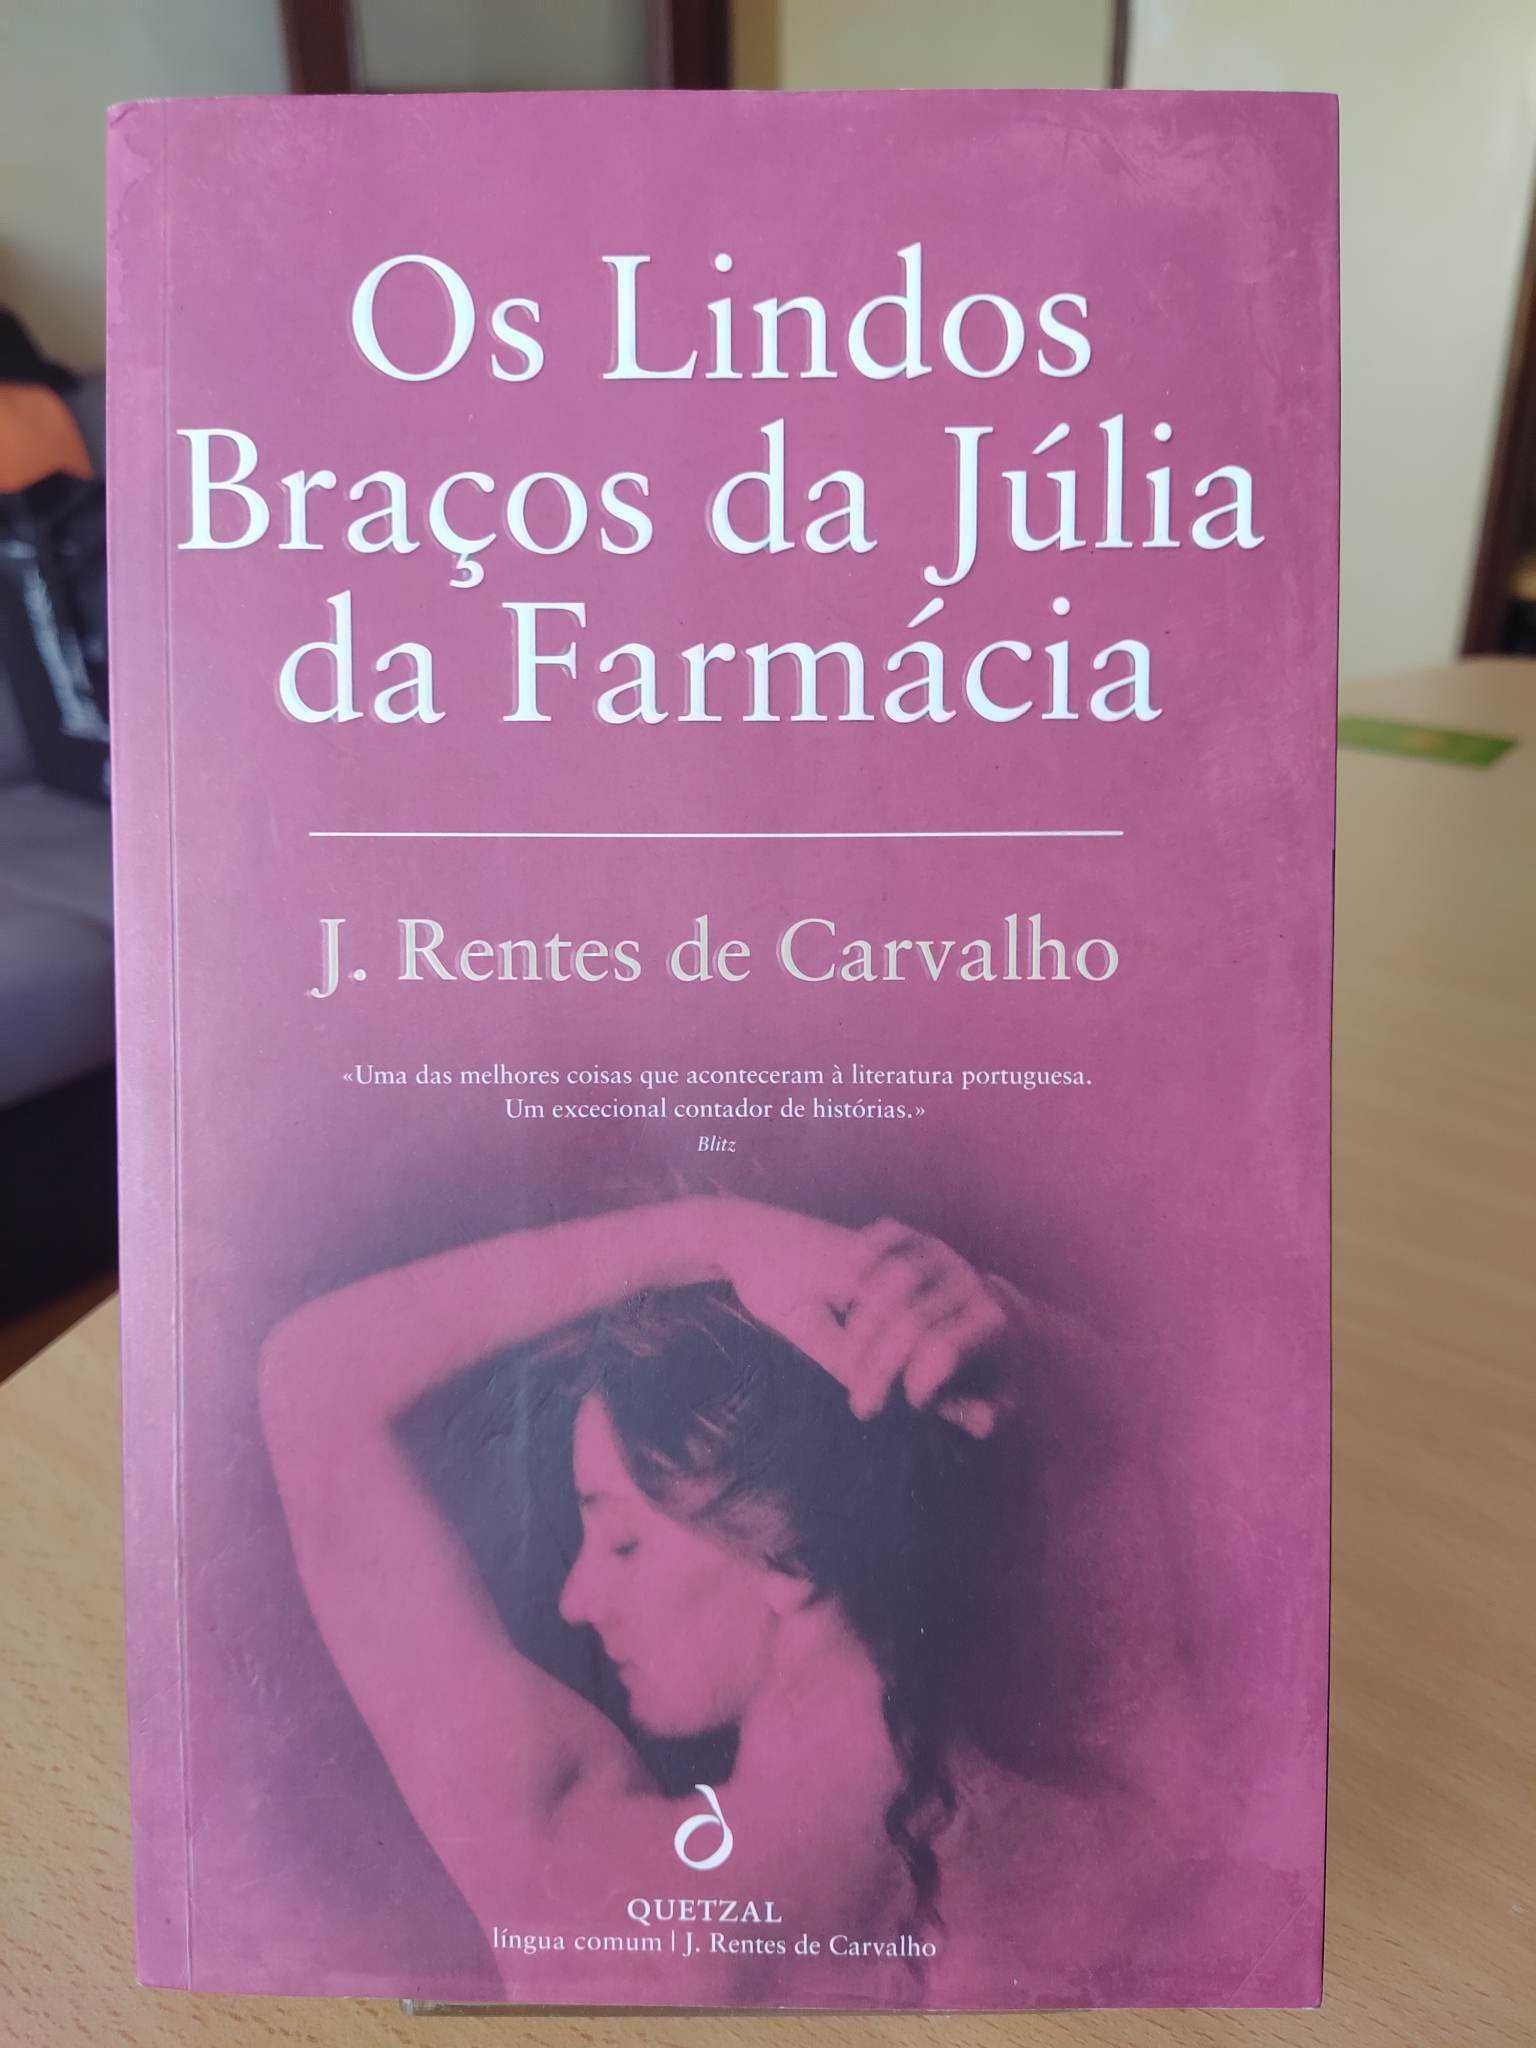 Livro “Os lindos braços da Júlia da farmácia"